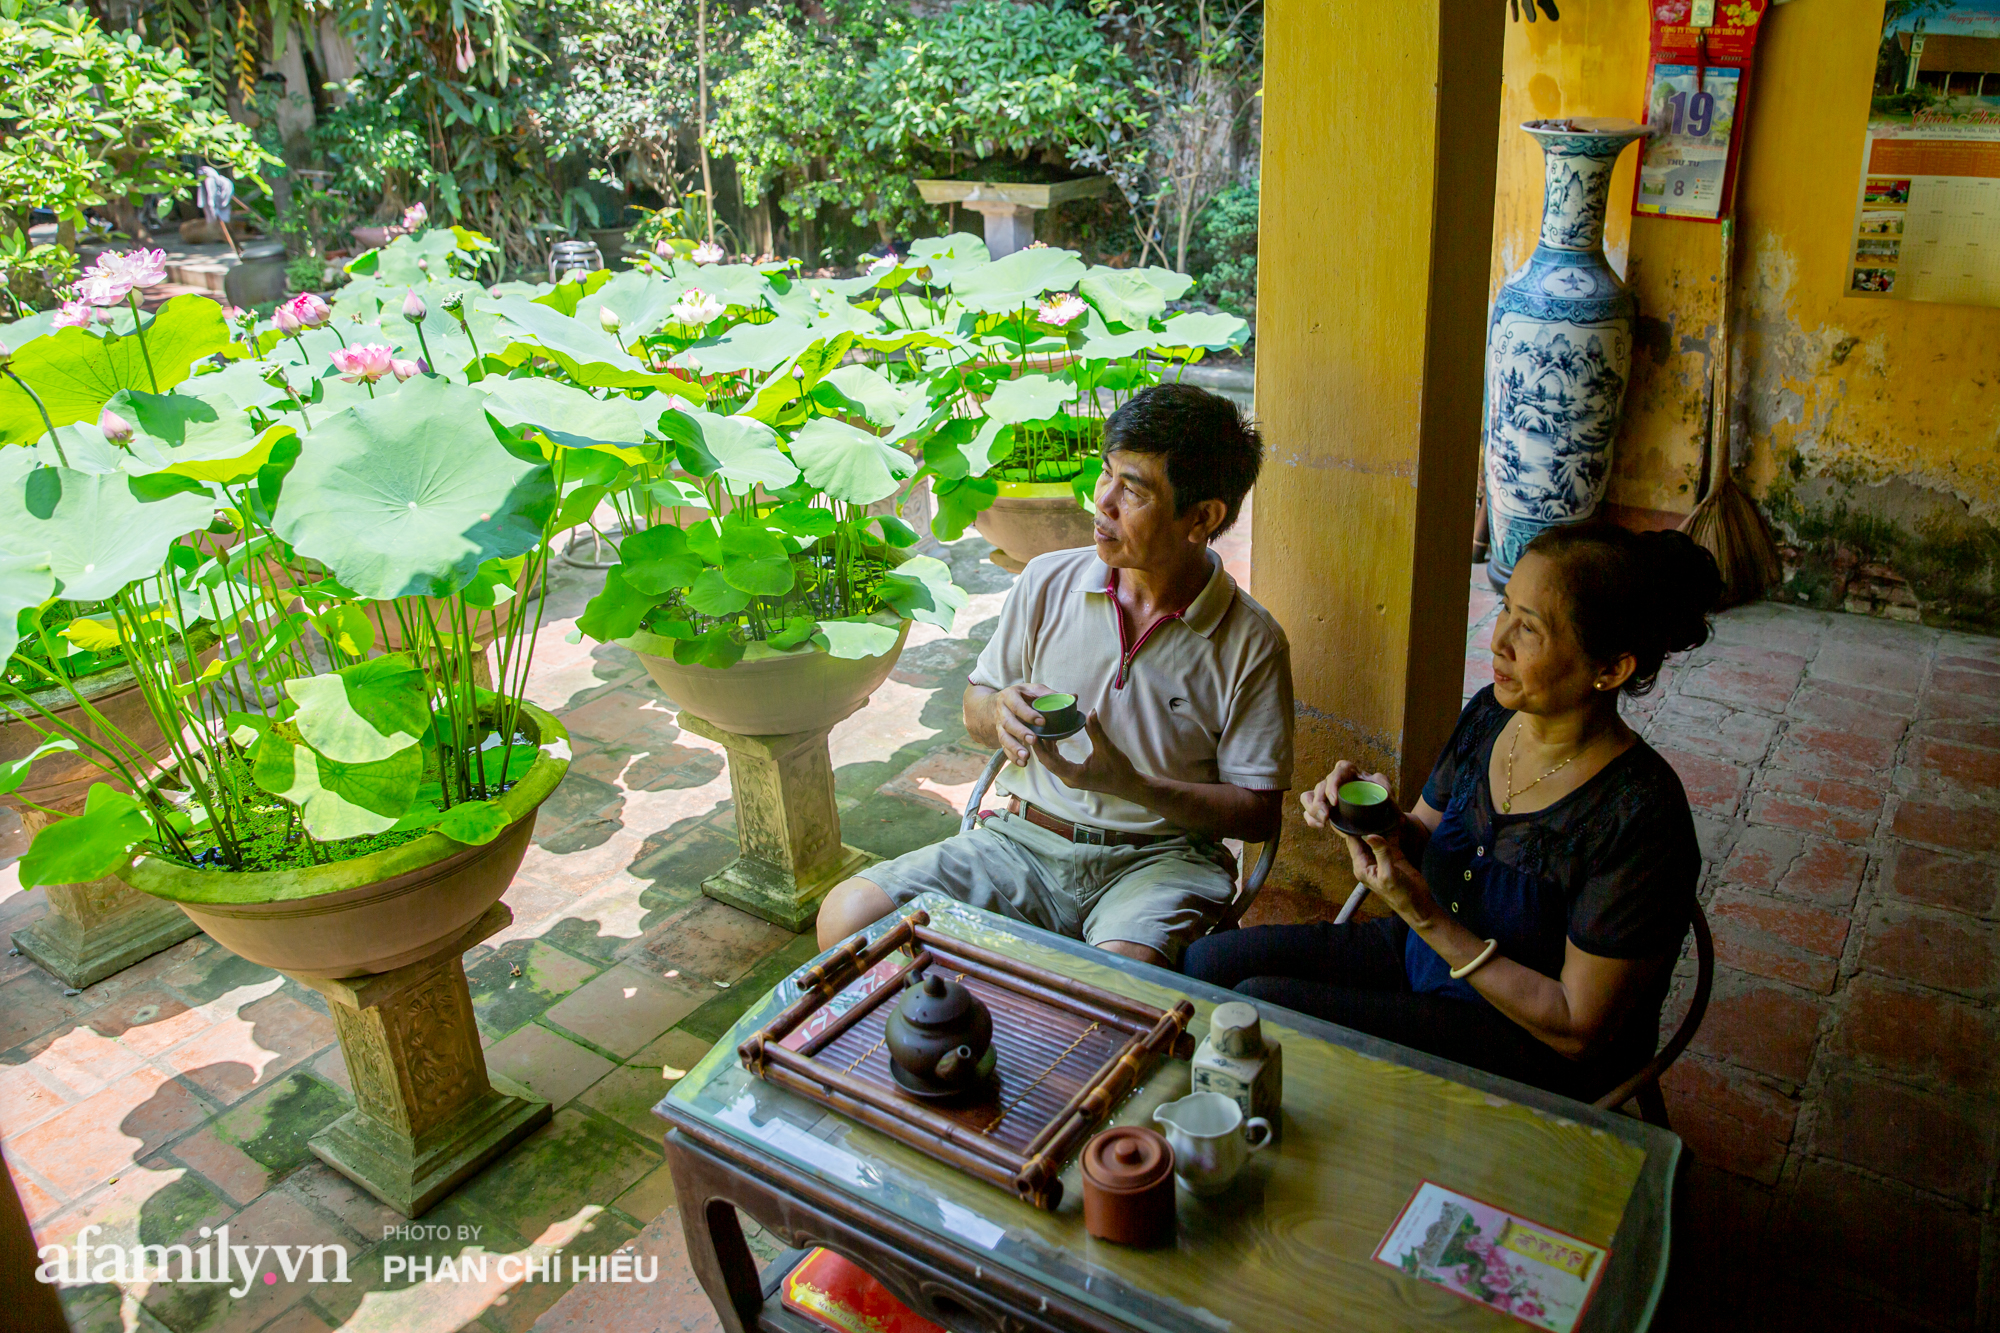 Đôi vợ chồng sở hữu căn nhà cổ 100 năm tuổi tại Hà Nội sưu tập và trồng hàng trăm gốc sen cung đình Huế quanh nhà khiến ai đi qua cũng phải trầm trồ - Ảnh 13.